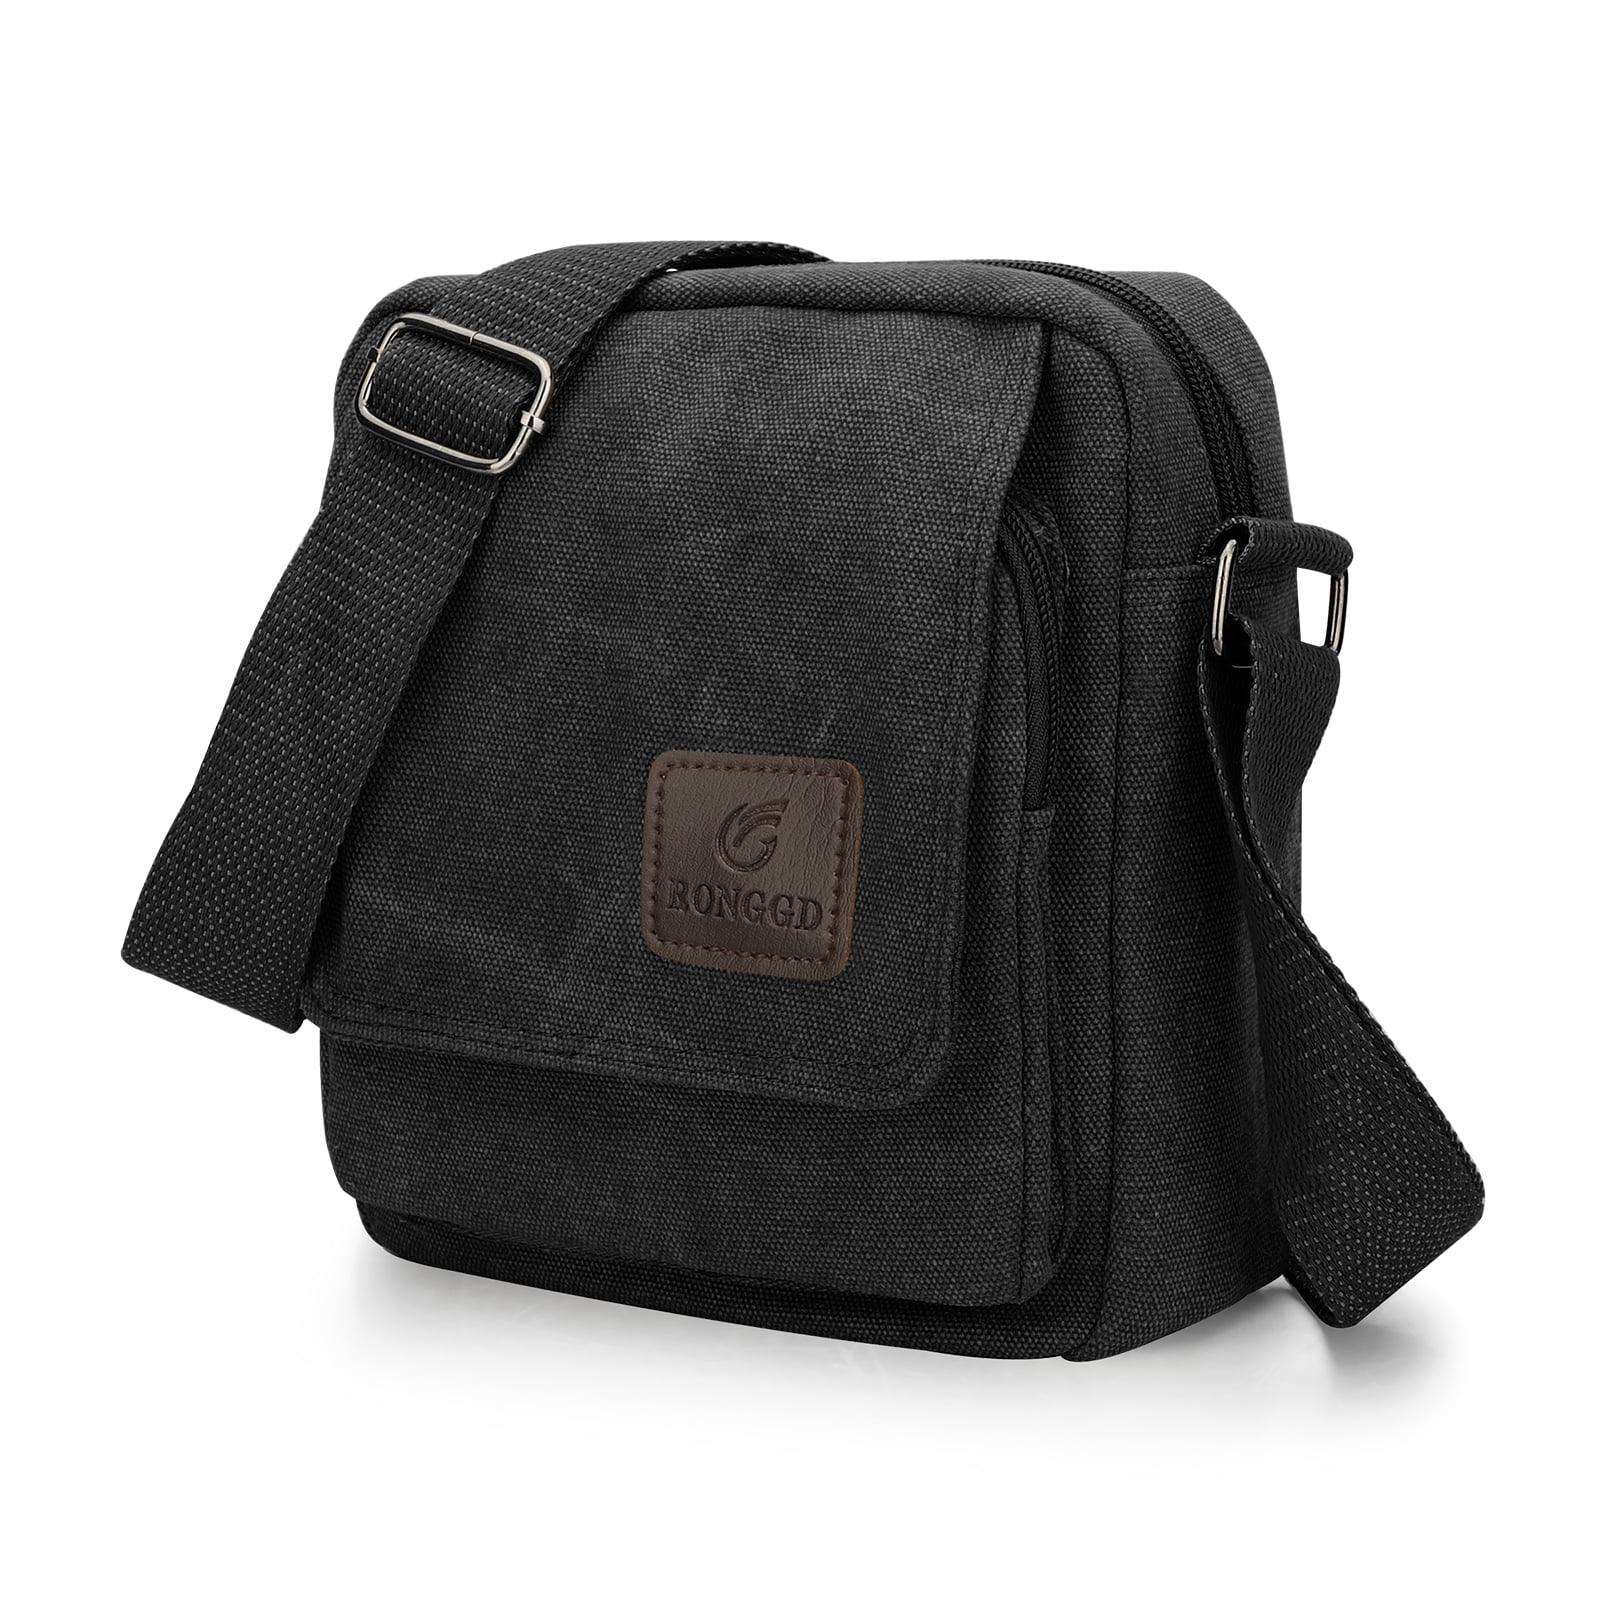 Adjustable Wide Shoulder Bag Straps, EEEkit 3 Pack Handbag Straps